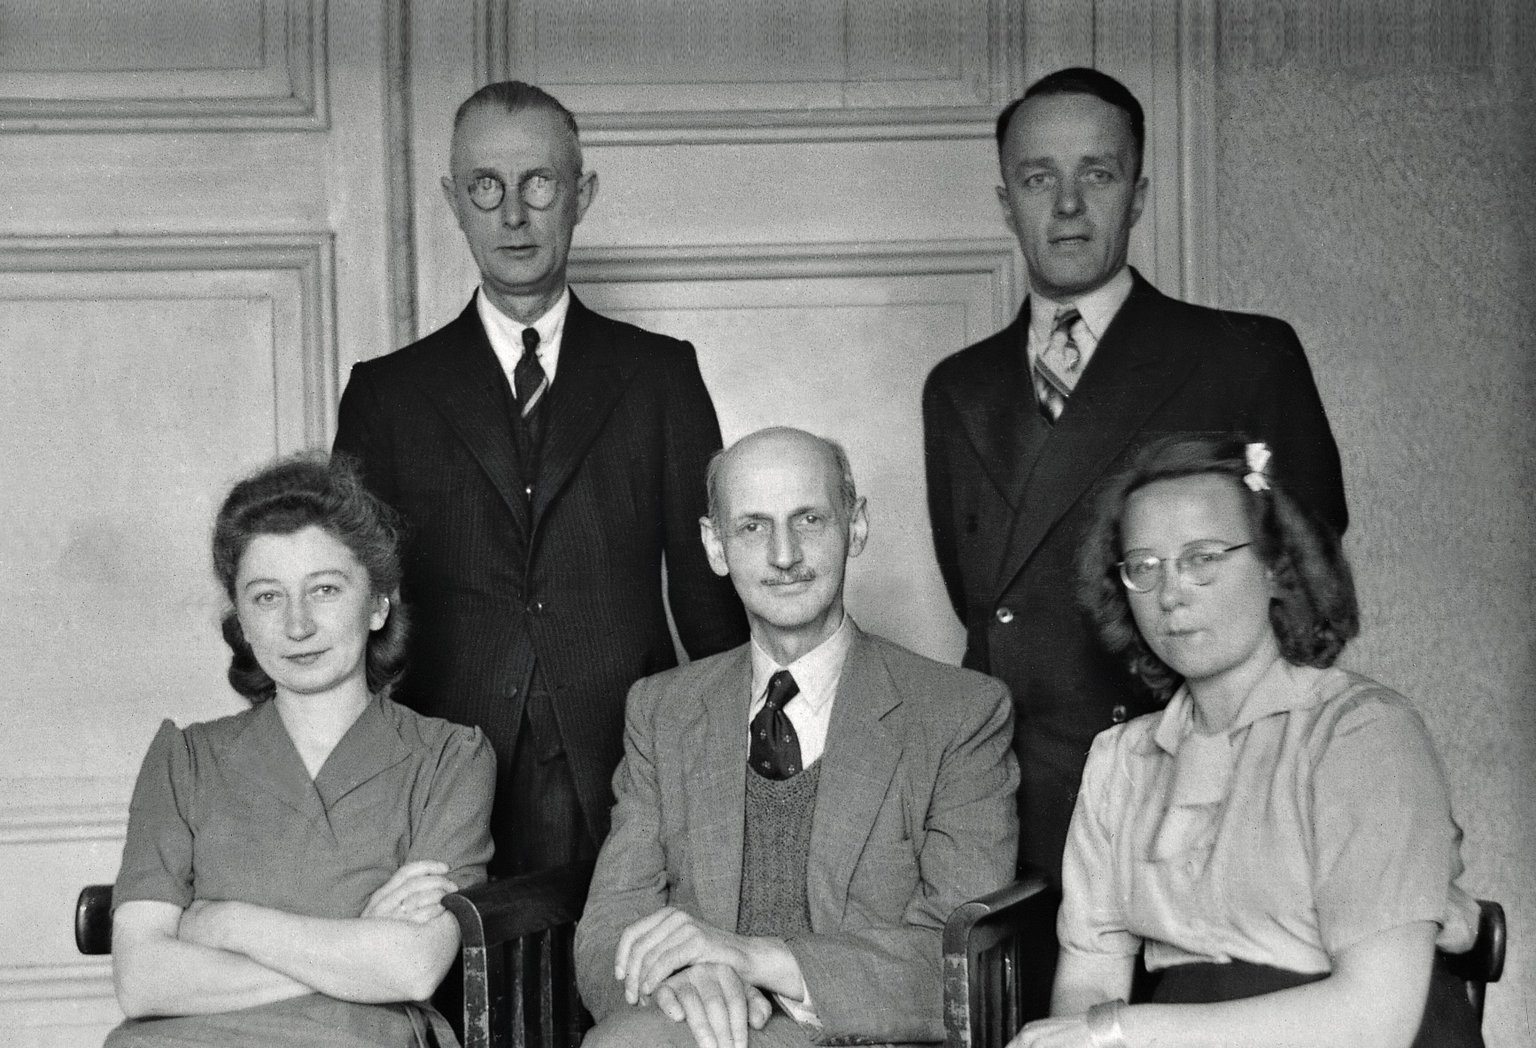 Otto Frank met de helpers in het kantoor van Prinsengracht 263, oktober 1945. Van links naar rechts: Miep Gies, Johannes Kleiman, Otto Frank, Victor Kugler en Bep Voskuijl.